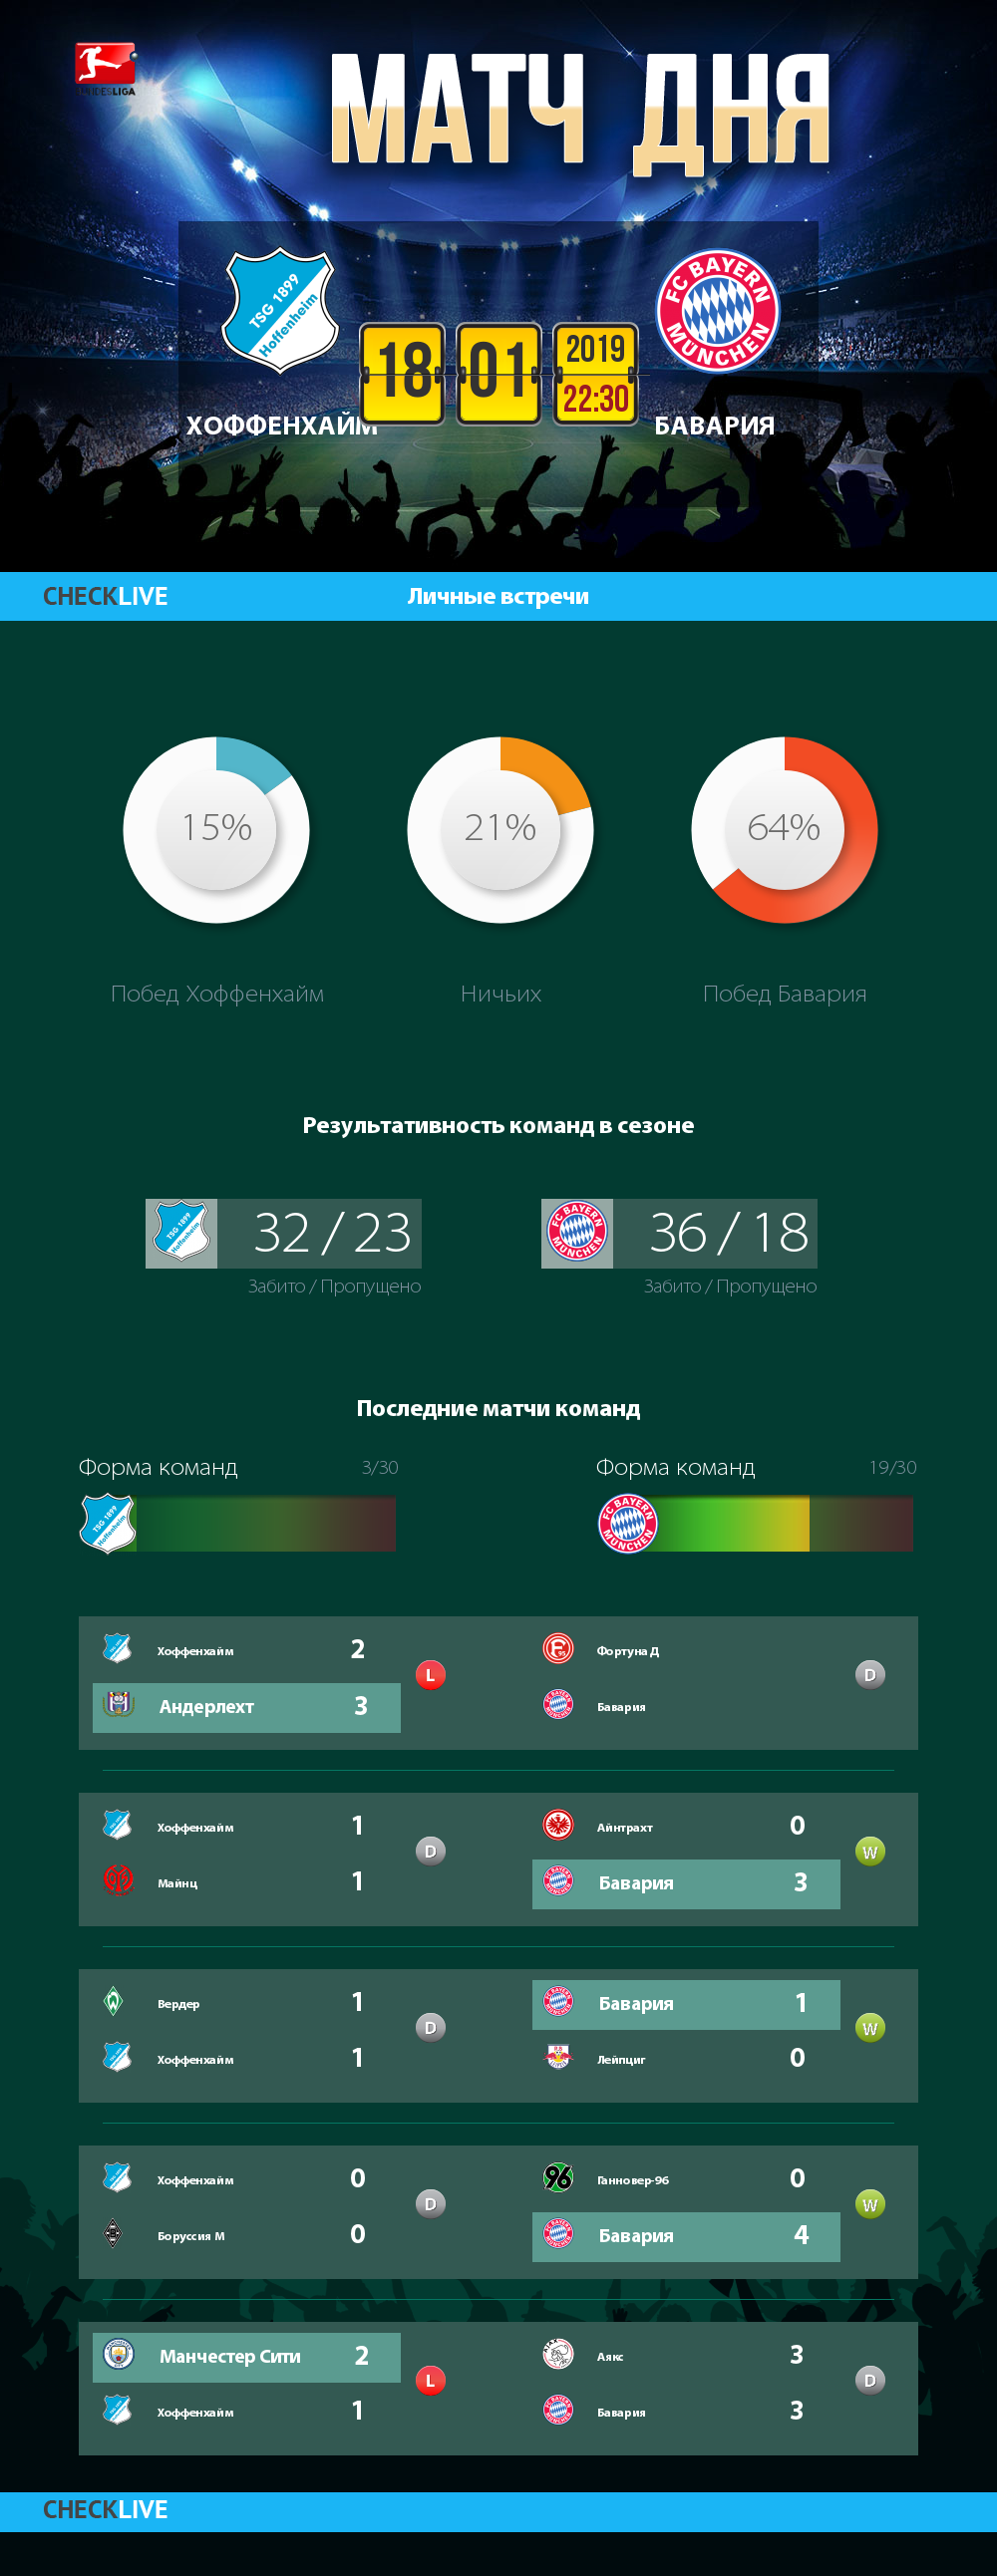 Инфографика Хоффенхайм и Бавария матч дня 18.01.2019